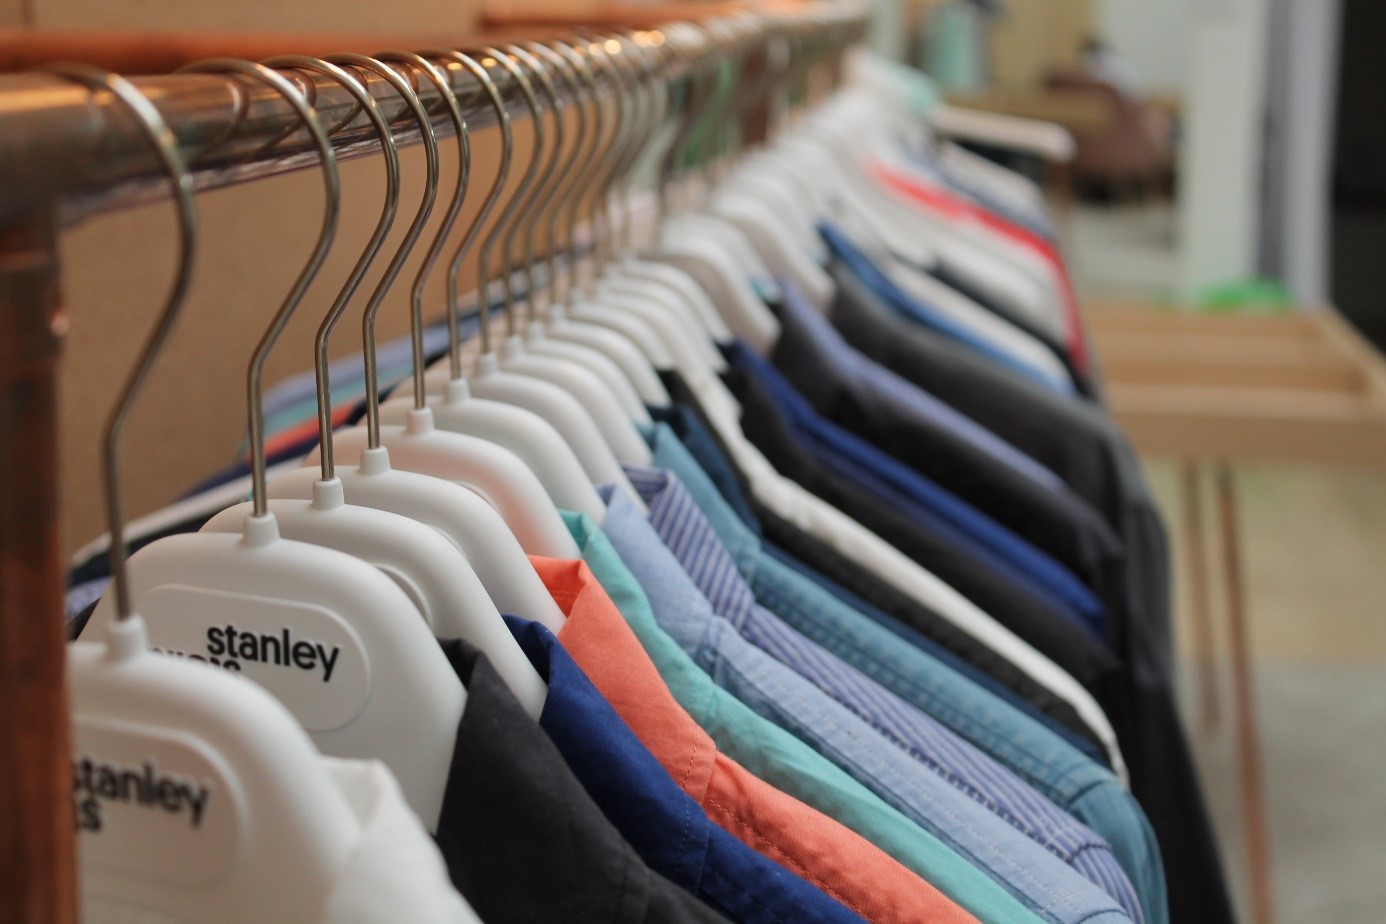 Grâce à l'utilisation intelligente de logiciels du cloud, les fournisseurs, les salariés et même les clients ont accès à des informations concernant les vêtements de la marque Stanley & Stella.